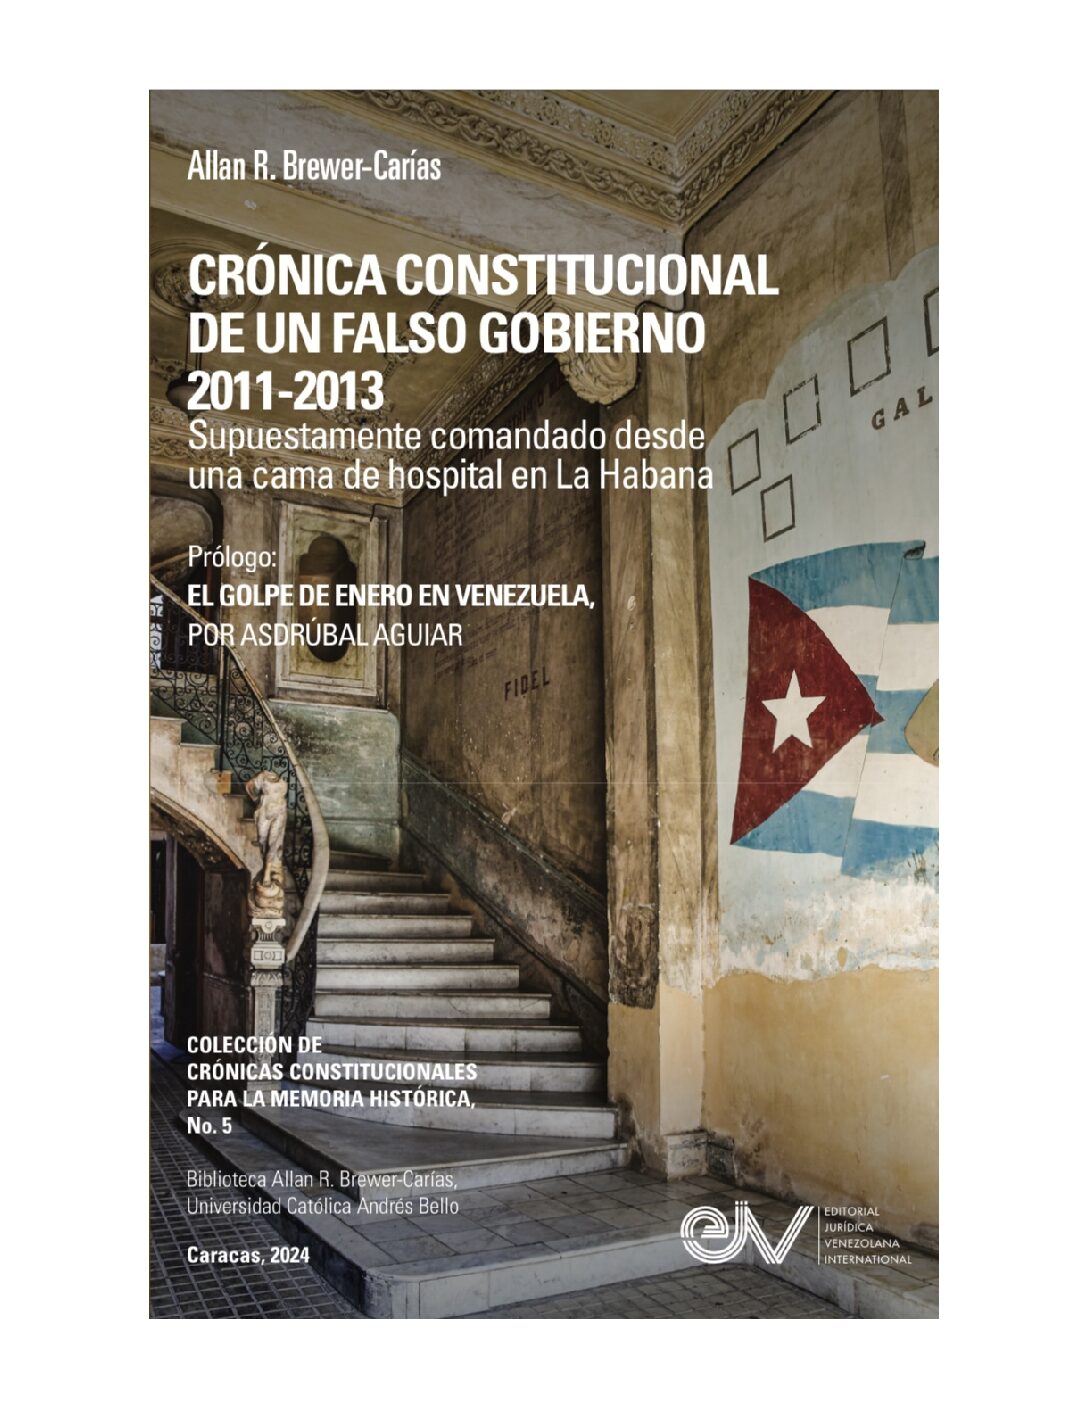 Disponible a texto completo el libro: Crónica constitucional de un falso gobierno 2011- 2013. Supuestamente comandado desde una cama de hospital en La Habana. Autor: Allan R. Brewer-Carías